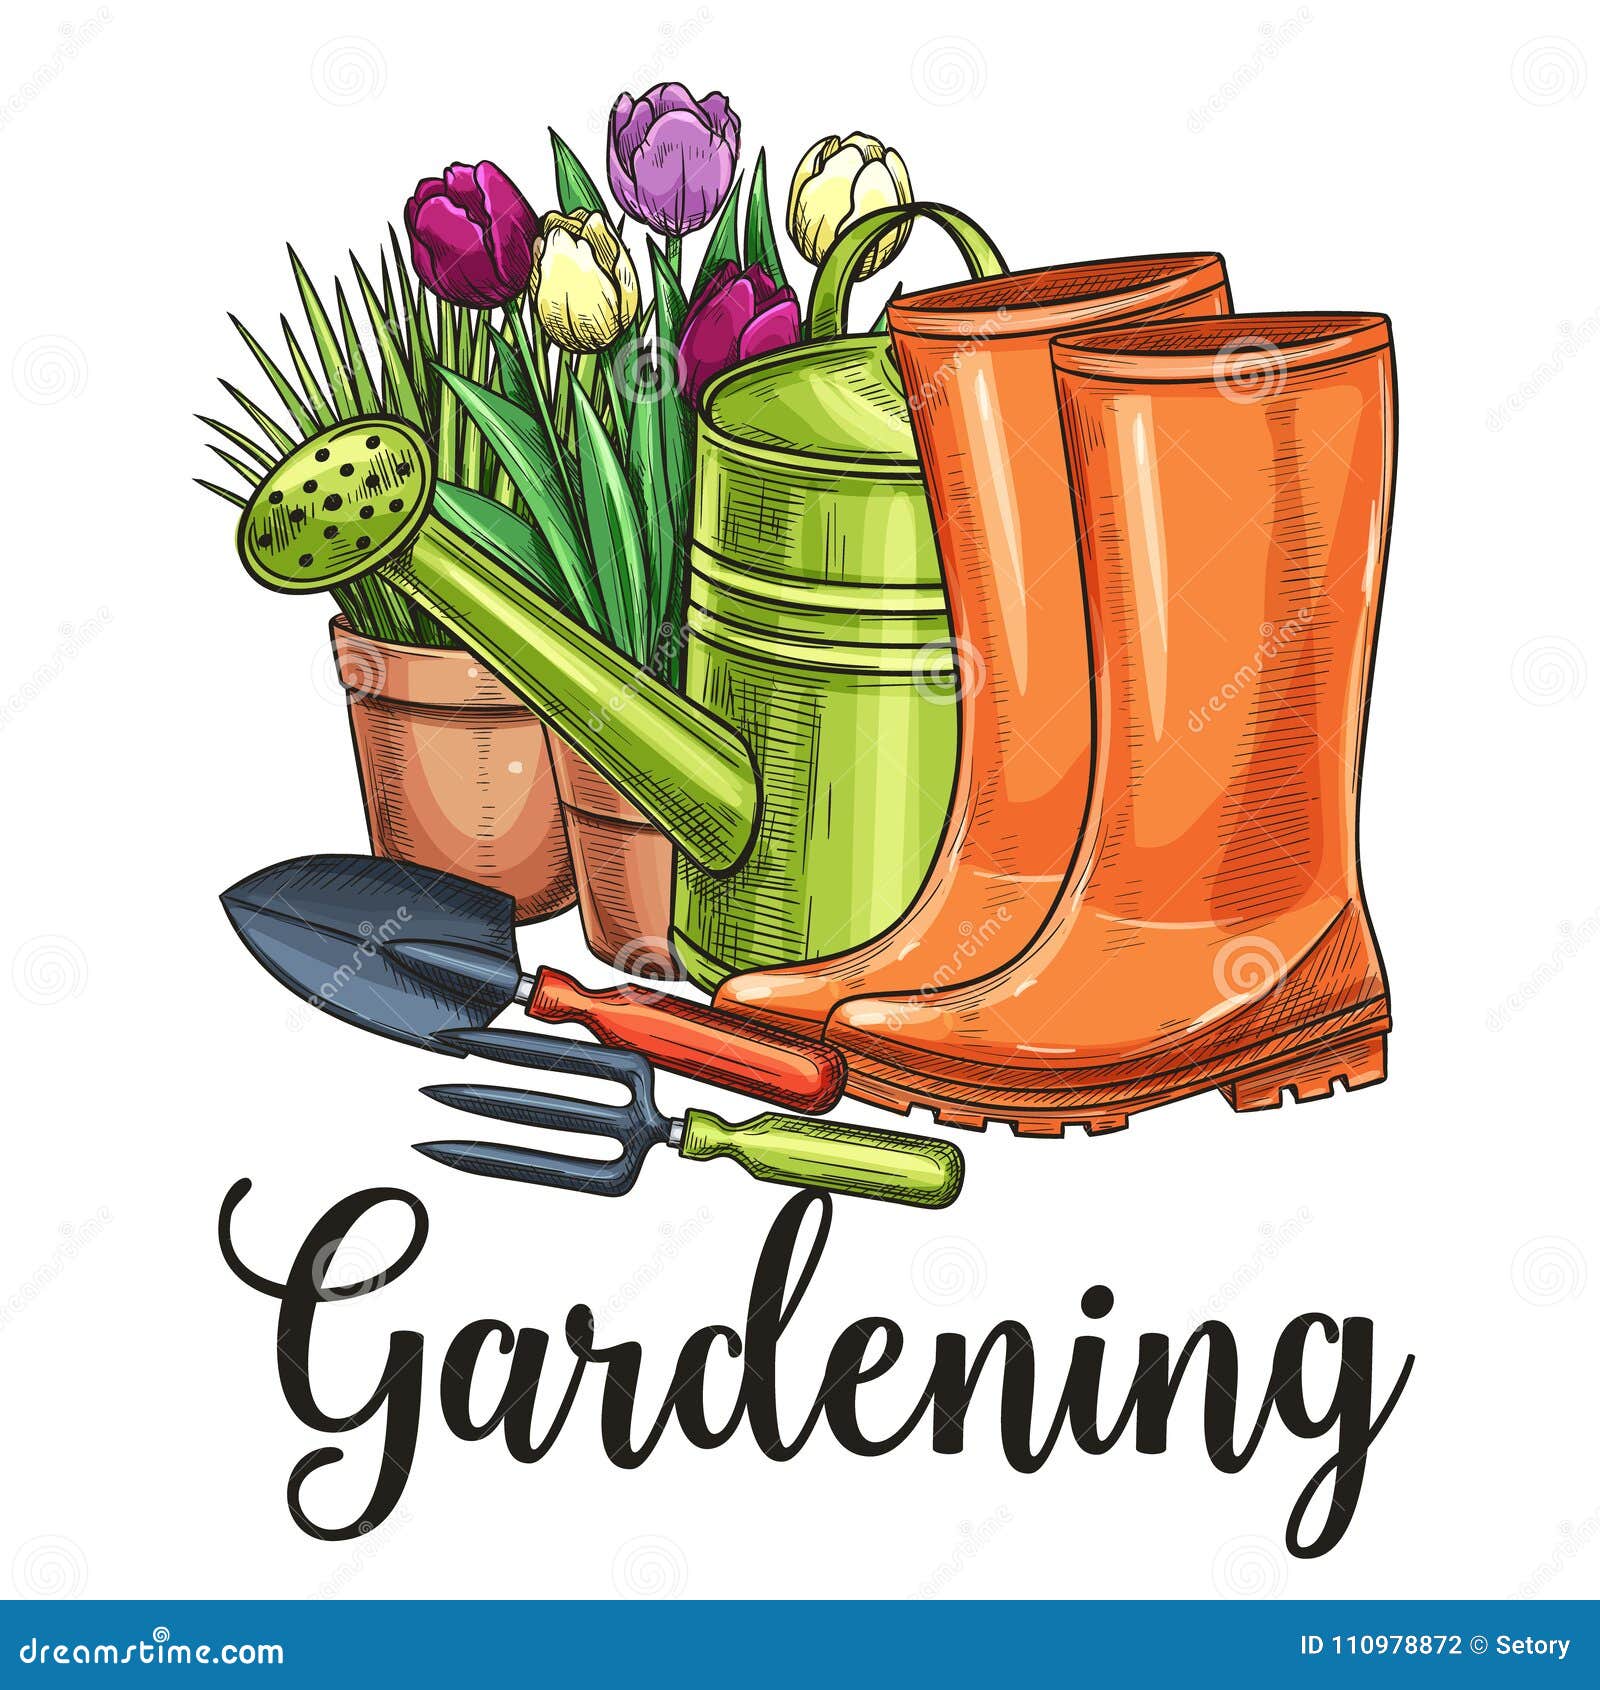 gardening banner